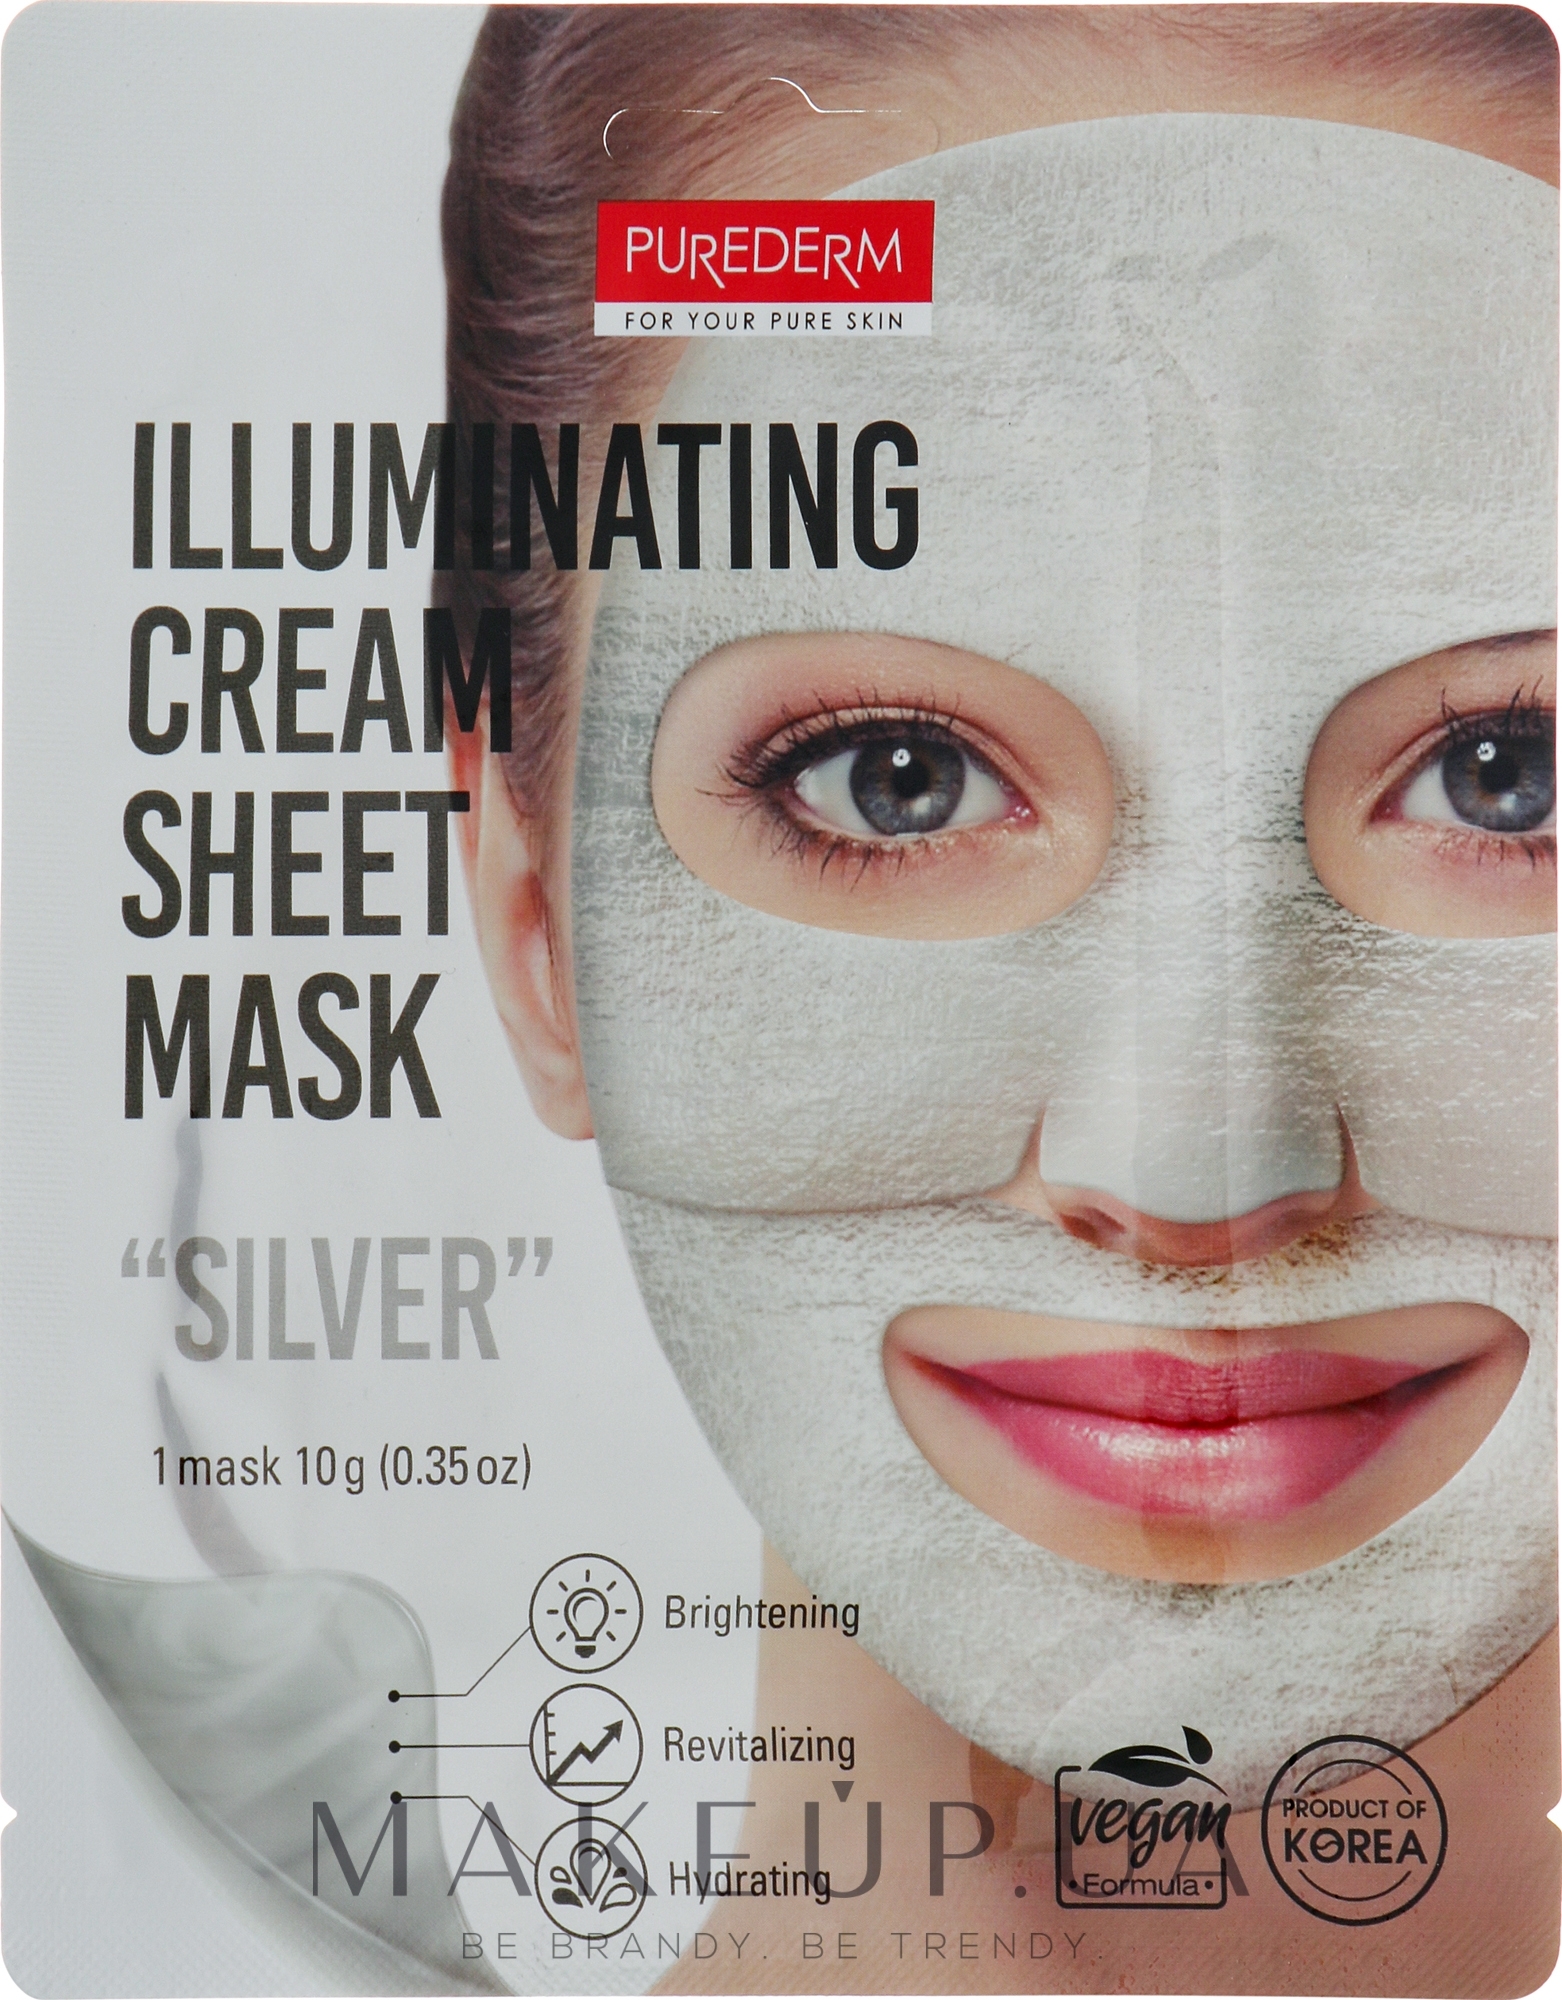 Осветляющая фольгированная маска для лица "Серебро" - Purederm Illuminating Cream Sheet Mask Silver — фото 10g